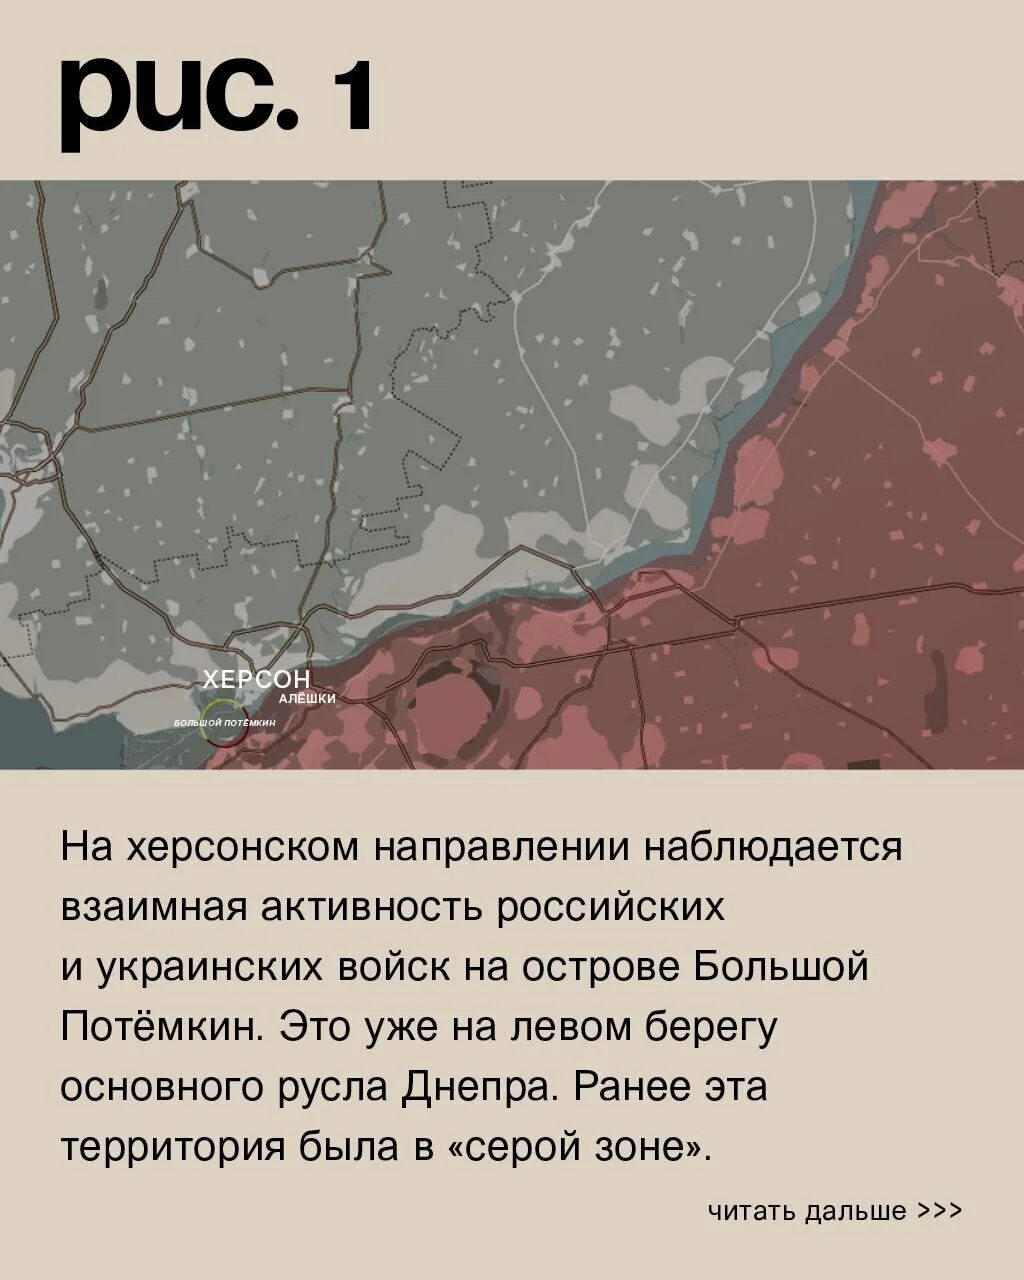 Авдеевка линия фронта сейчас. Авдеевка на карте боевых действий. Карта наступления на Украину. Авдеевское направление бердычи